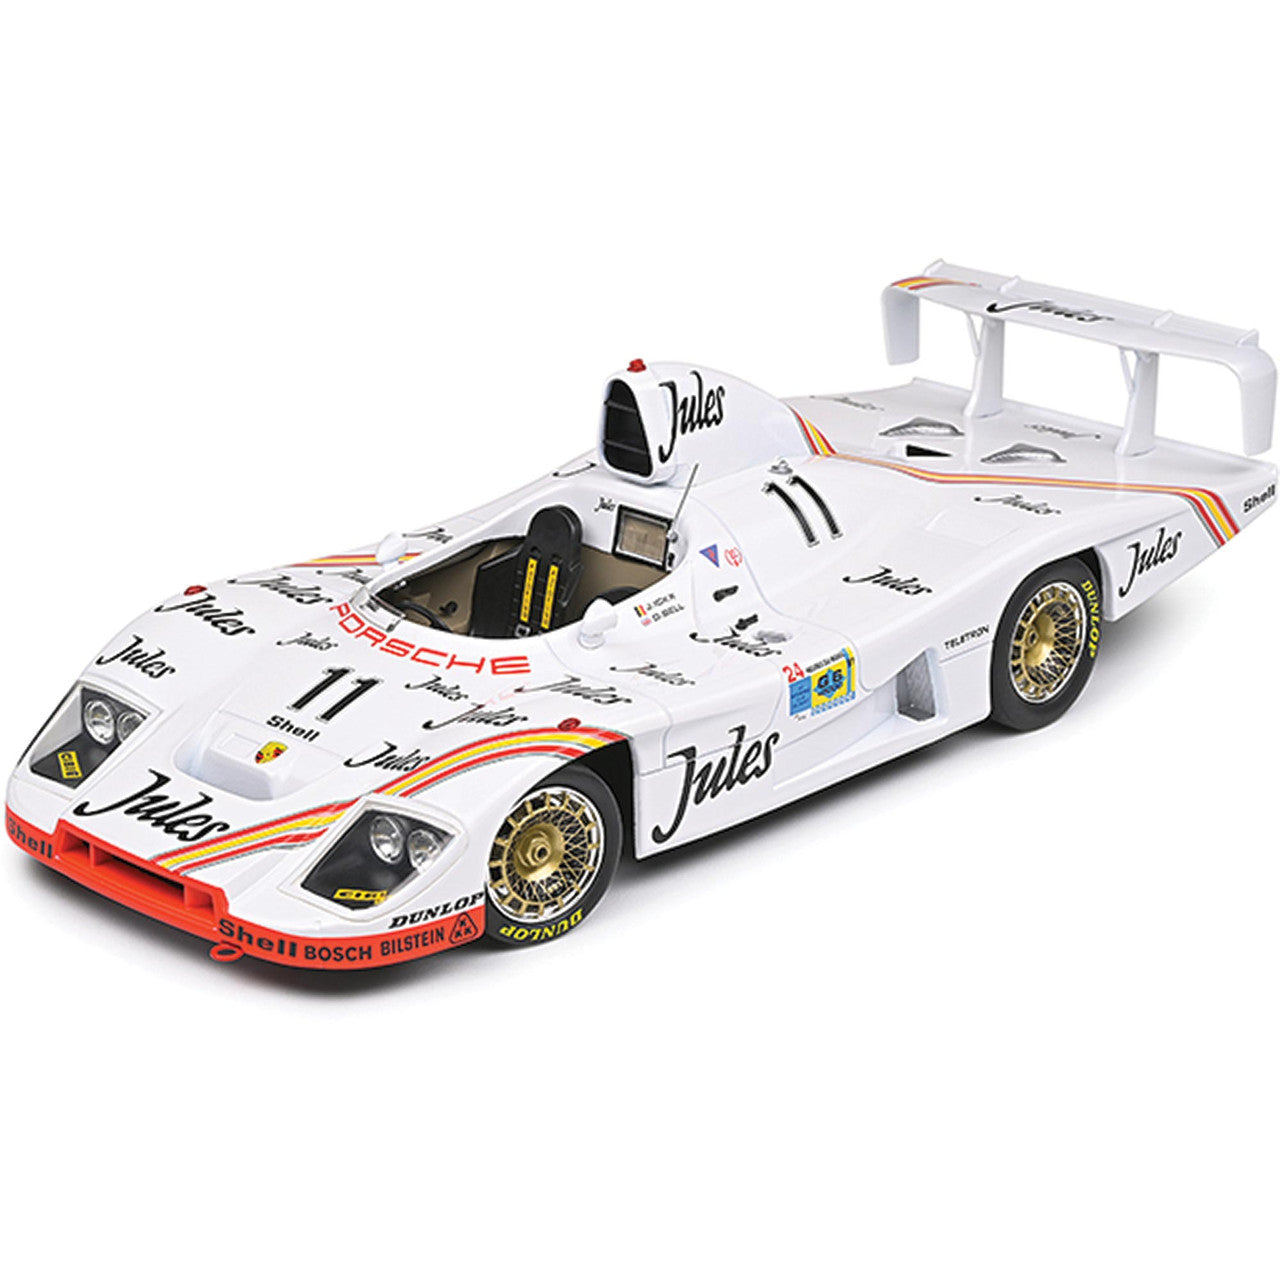 1981 Porsche 936/81 #11 Winner Le Mans 1:43 Spark diecast Scale Model Car